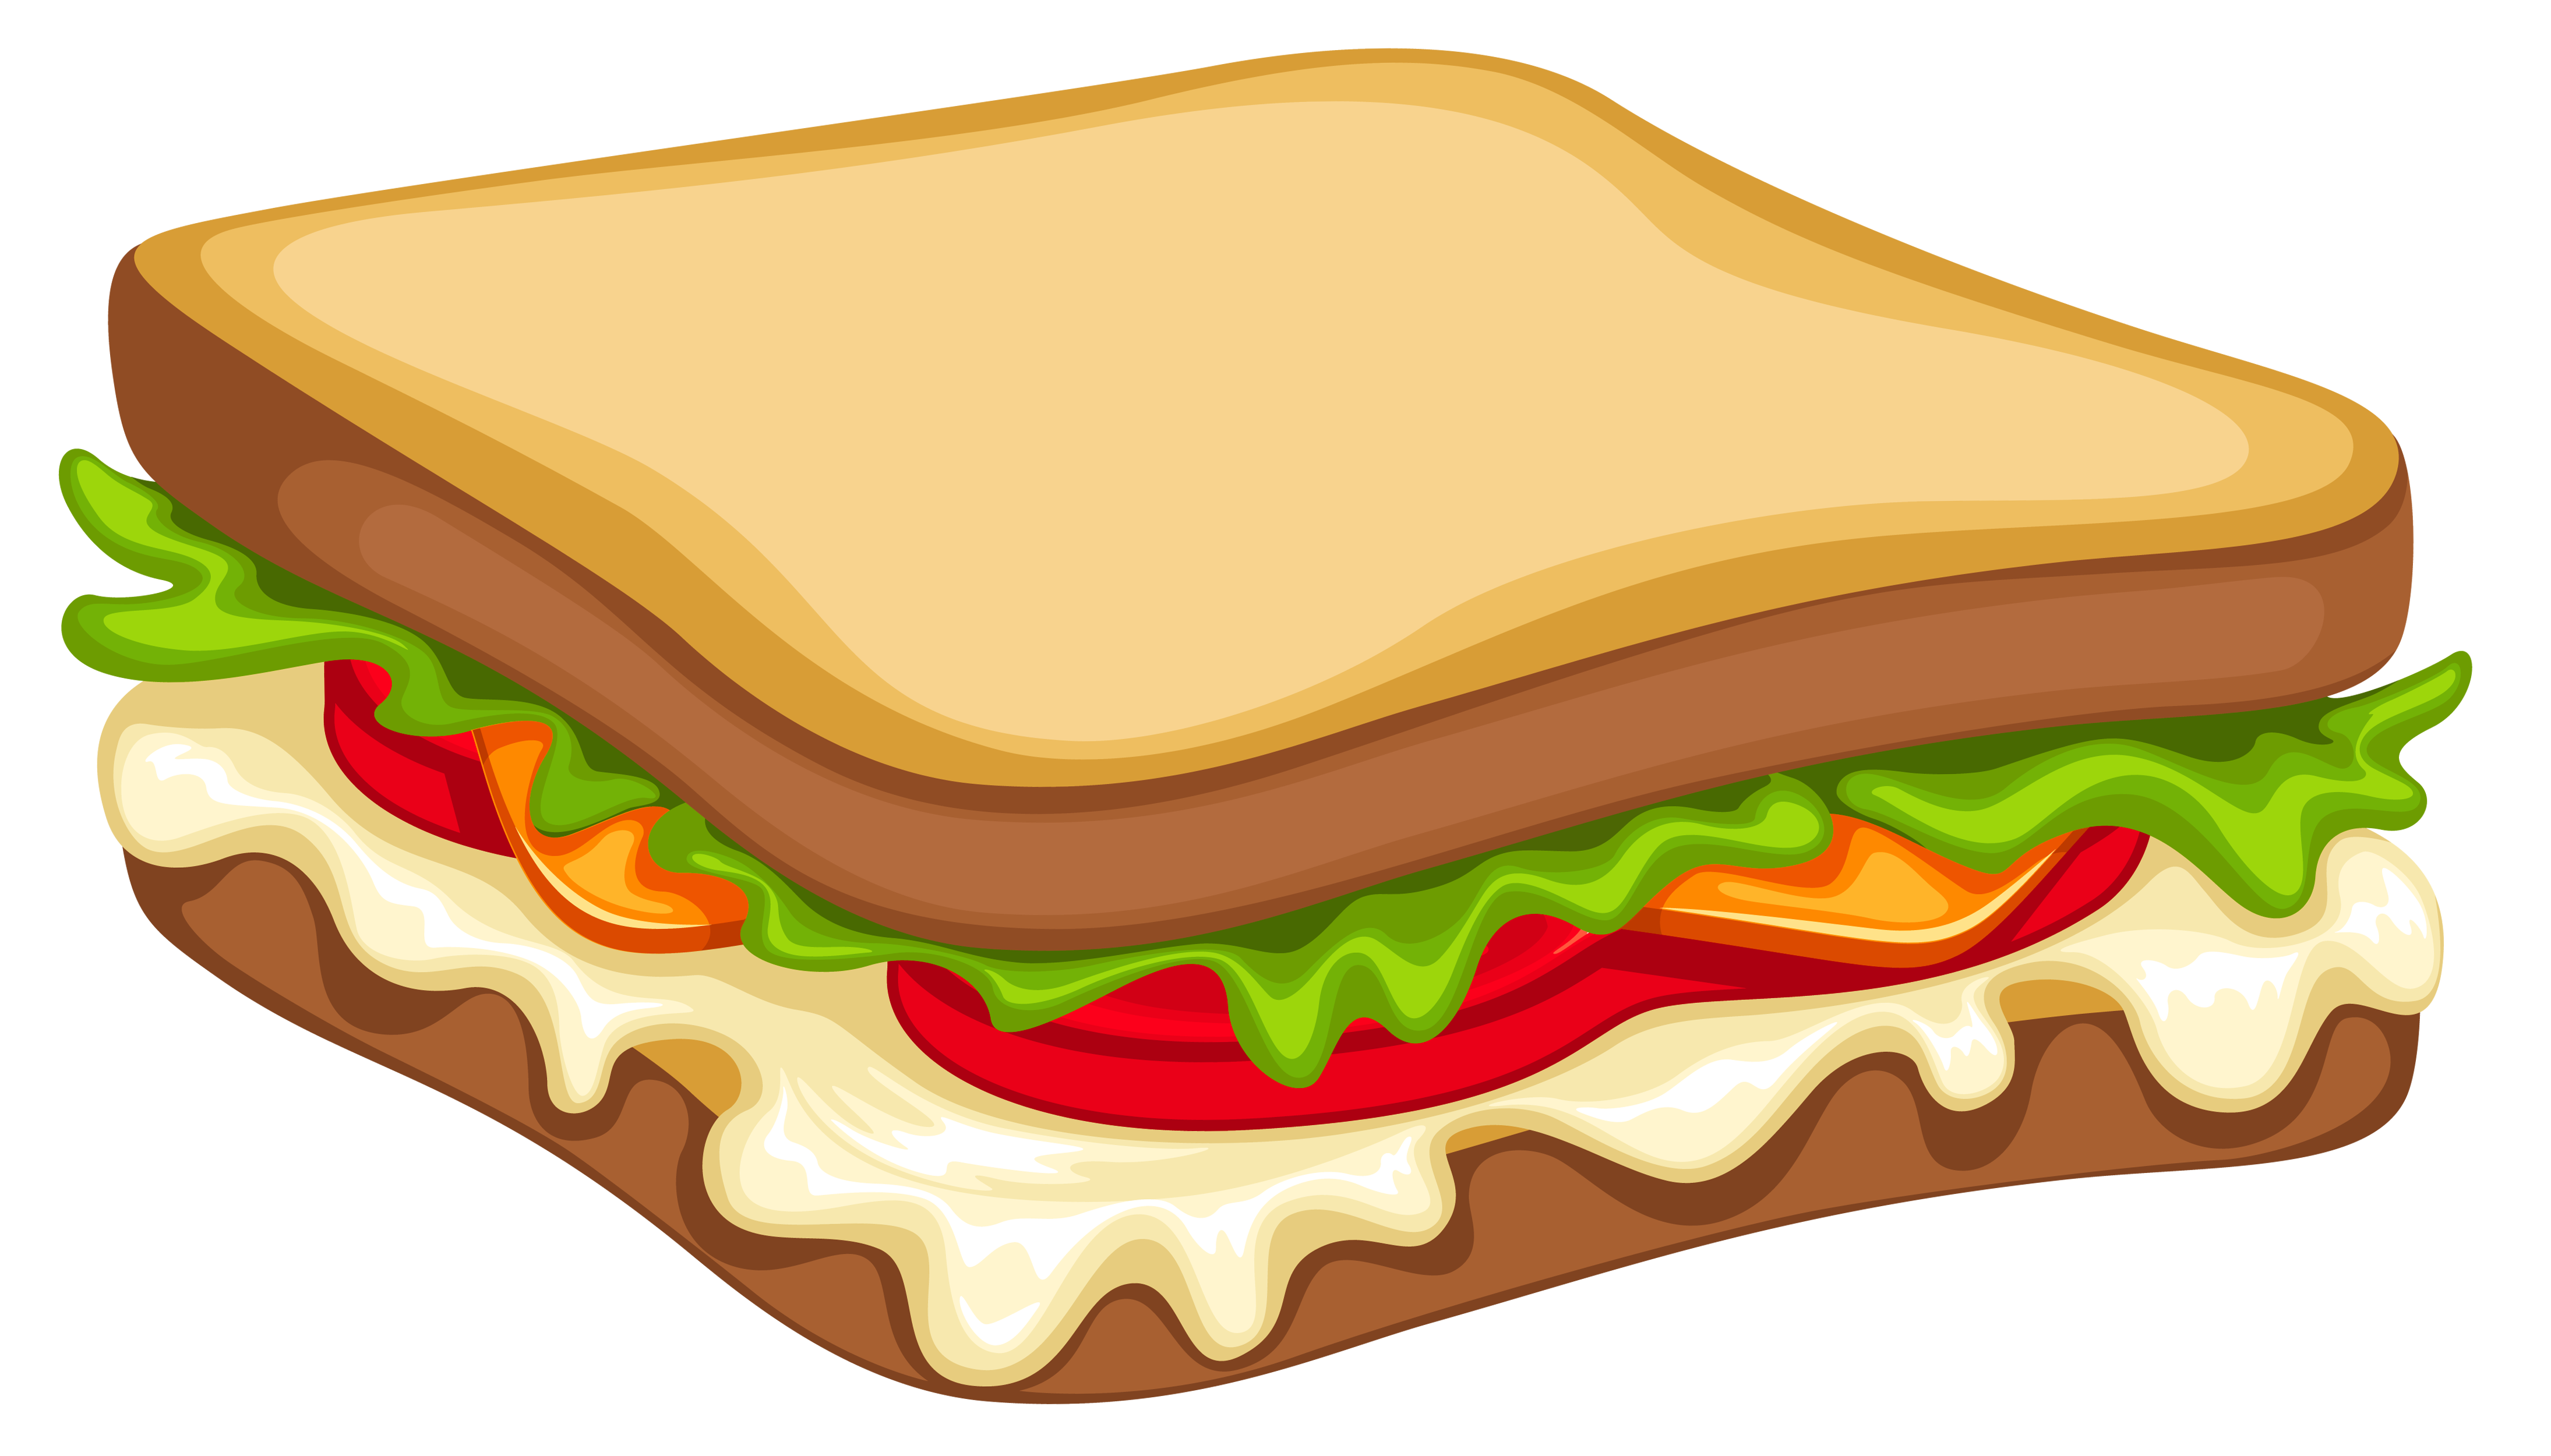 BLT & Cheese Sandwich